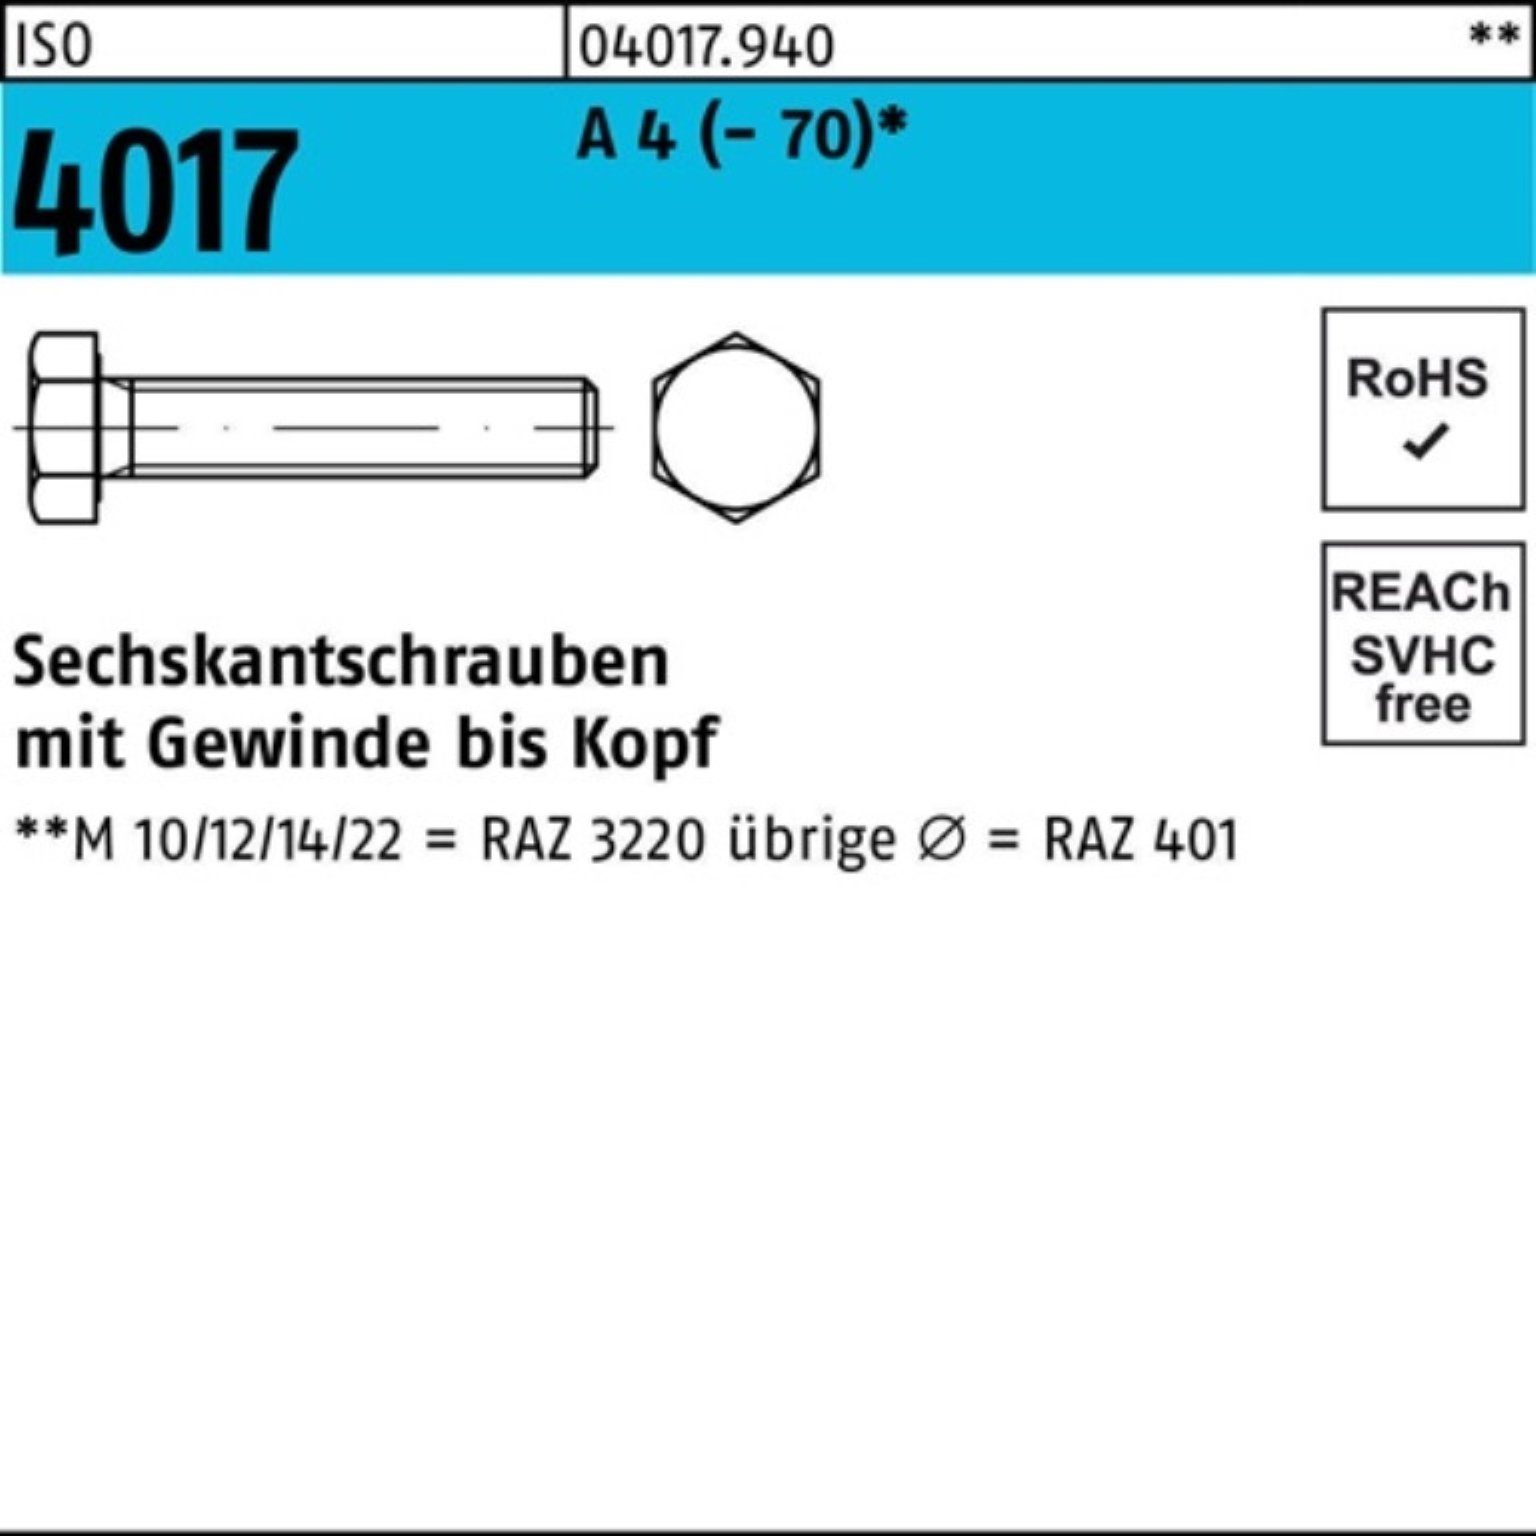 Bufab Sechskantschraube 100er ISO VG (70) 1 Sechskantschraube 150 Pack Stück 4017 4 M10x A